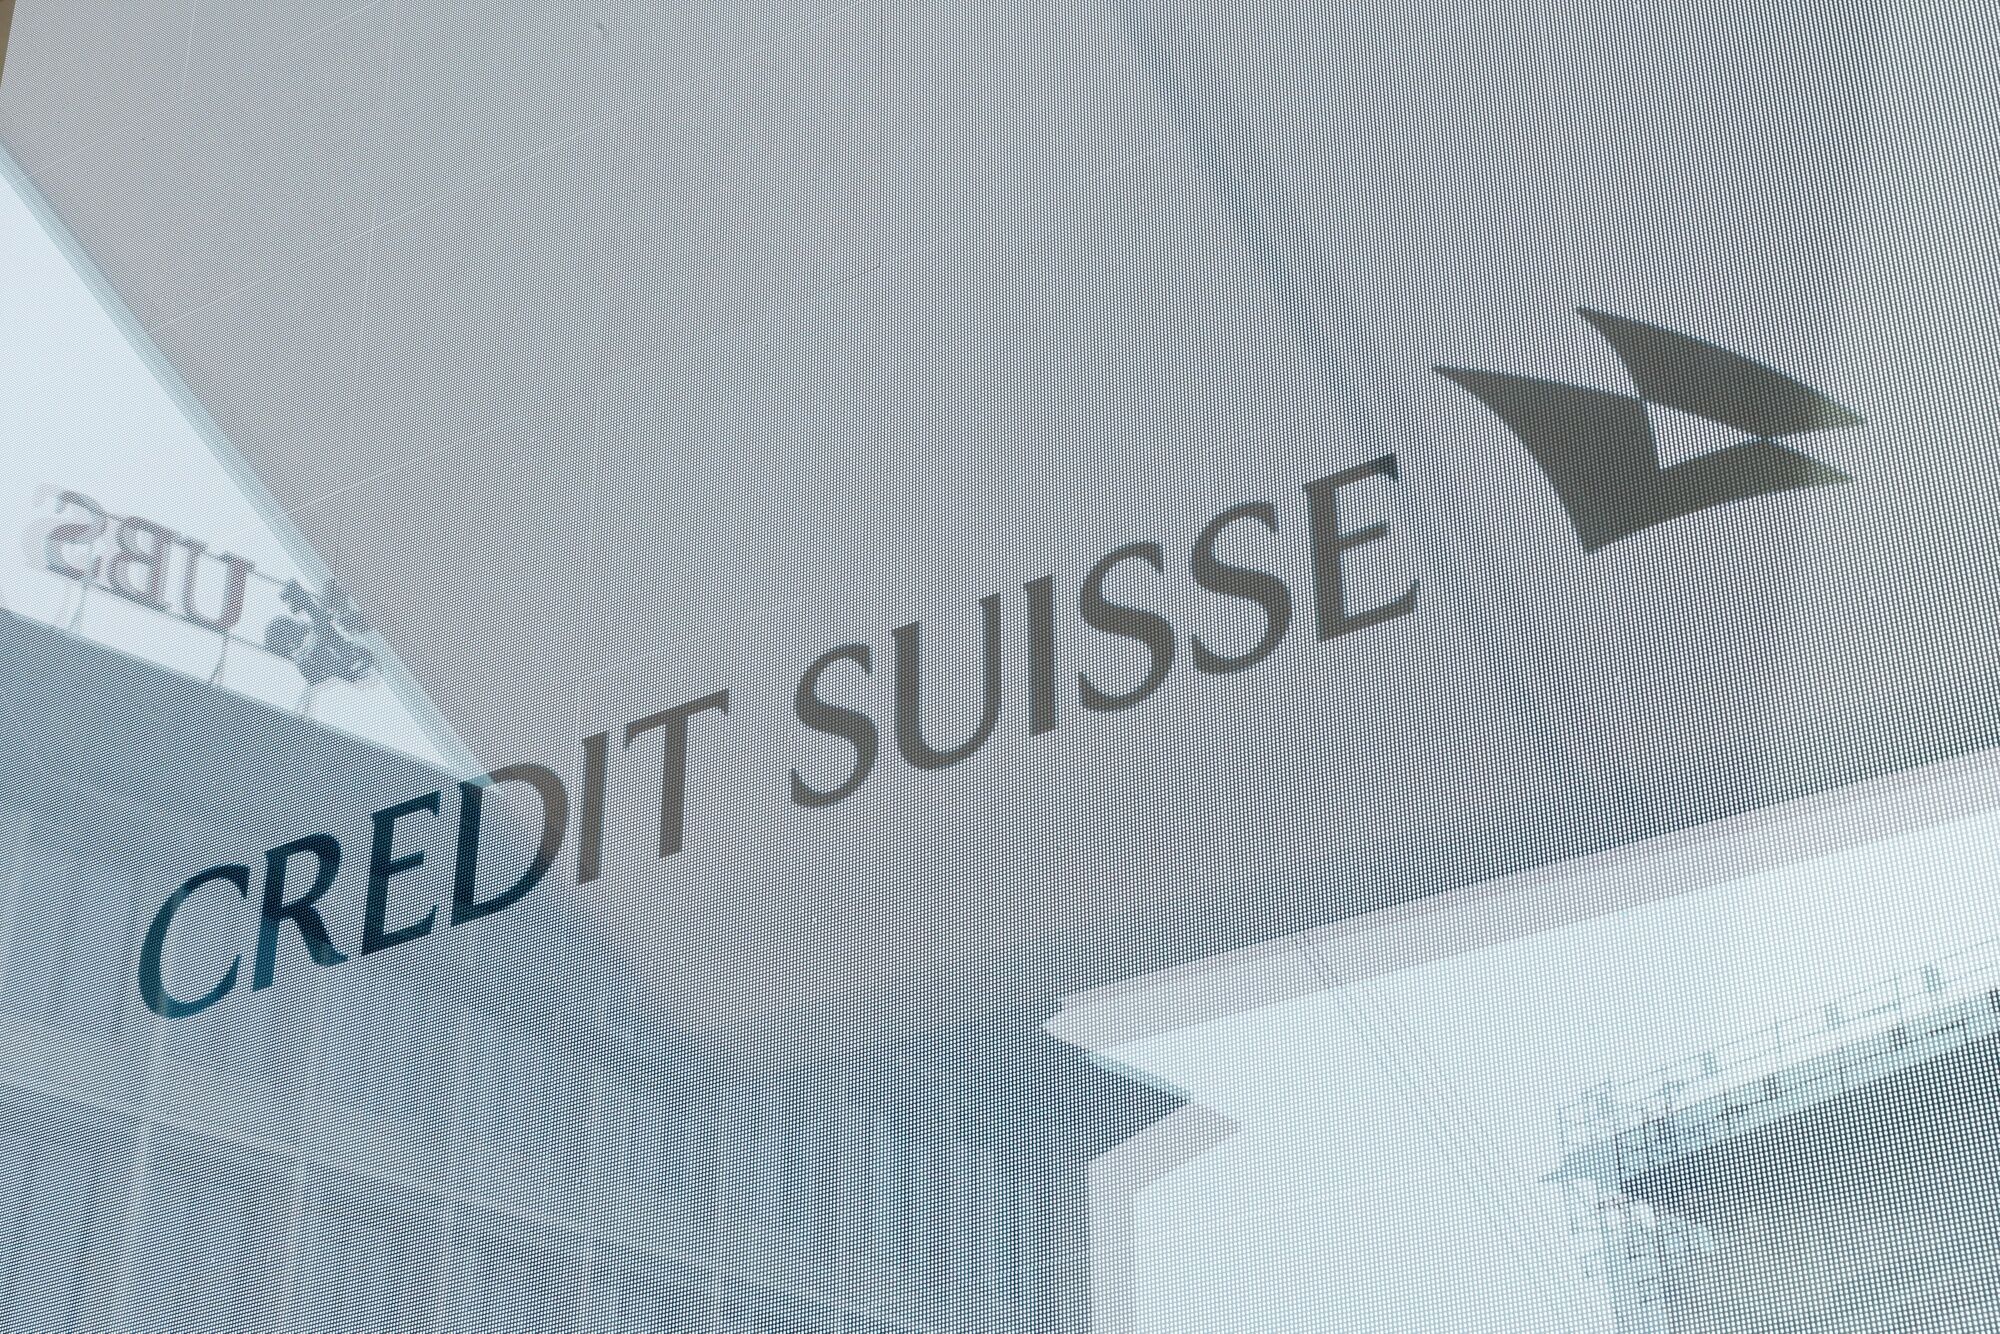 Acusaron al banco Credit Suisse de limitar una investigación interna sobre clientes nazis  